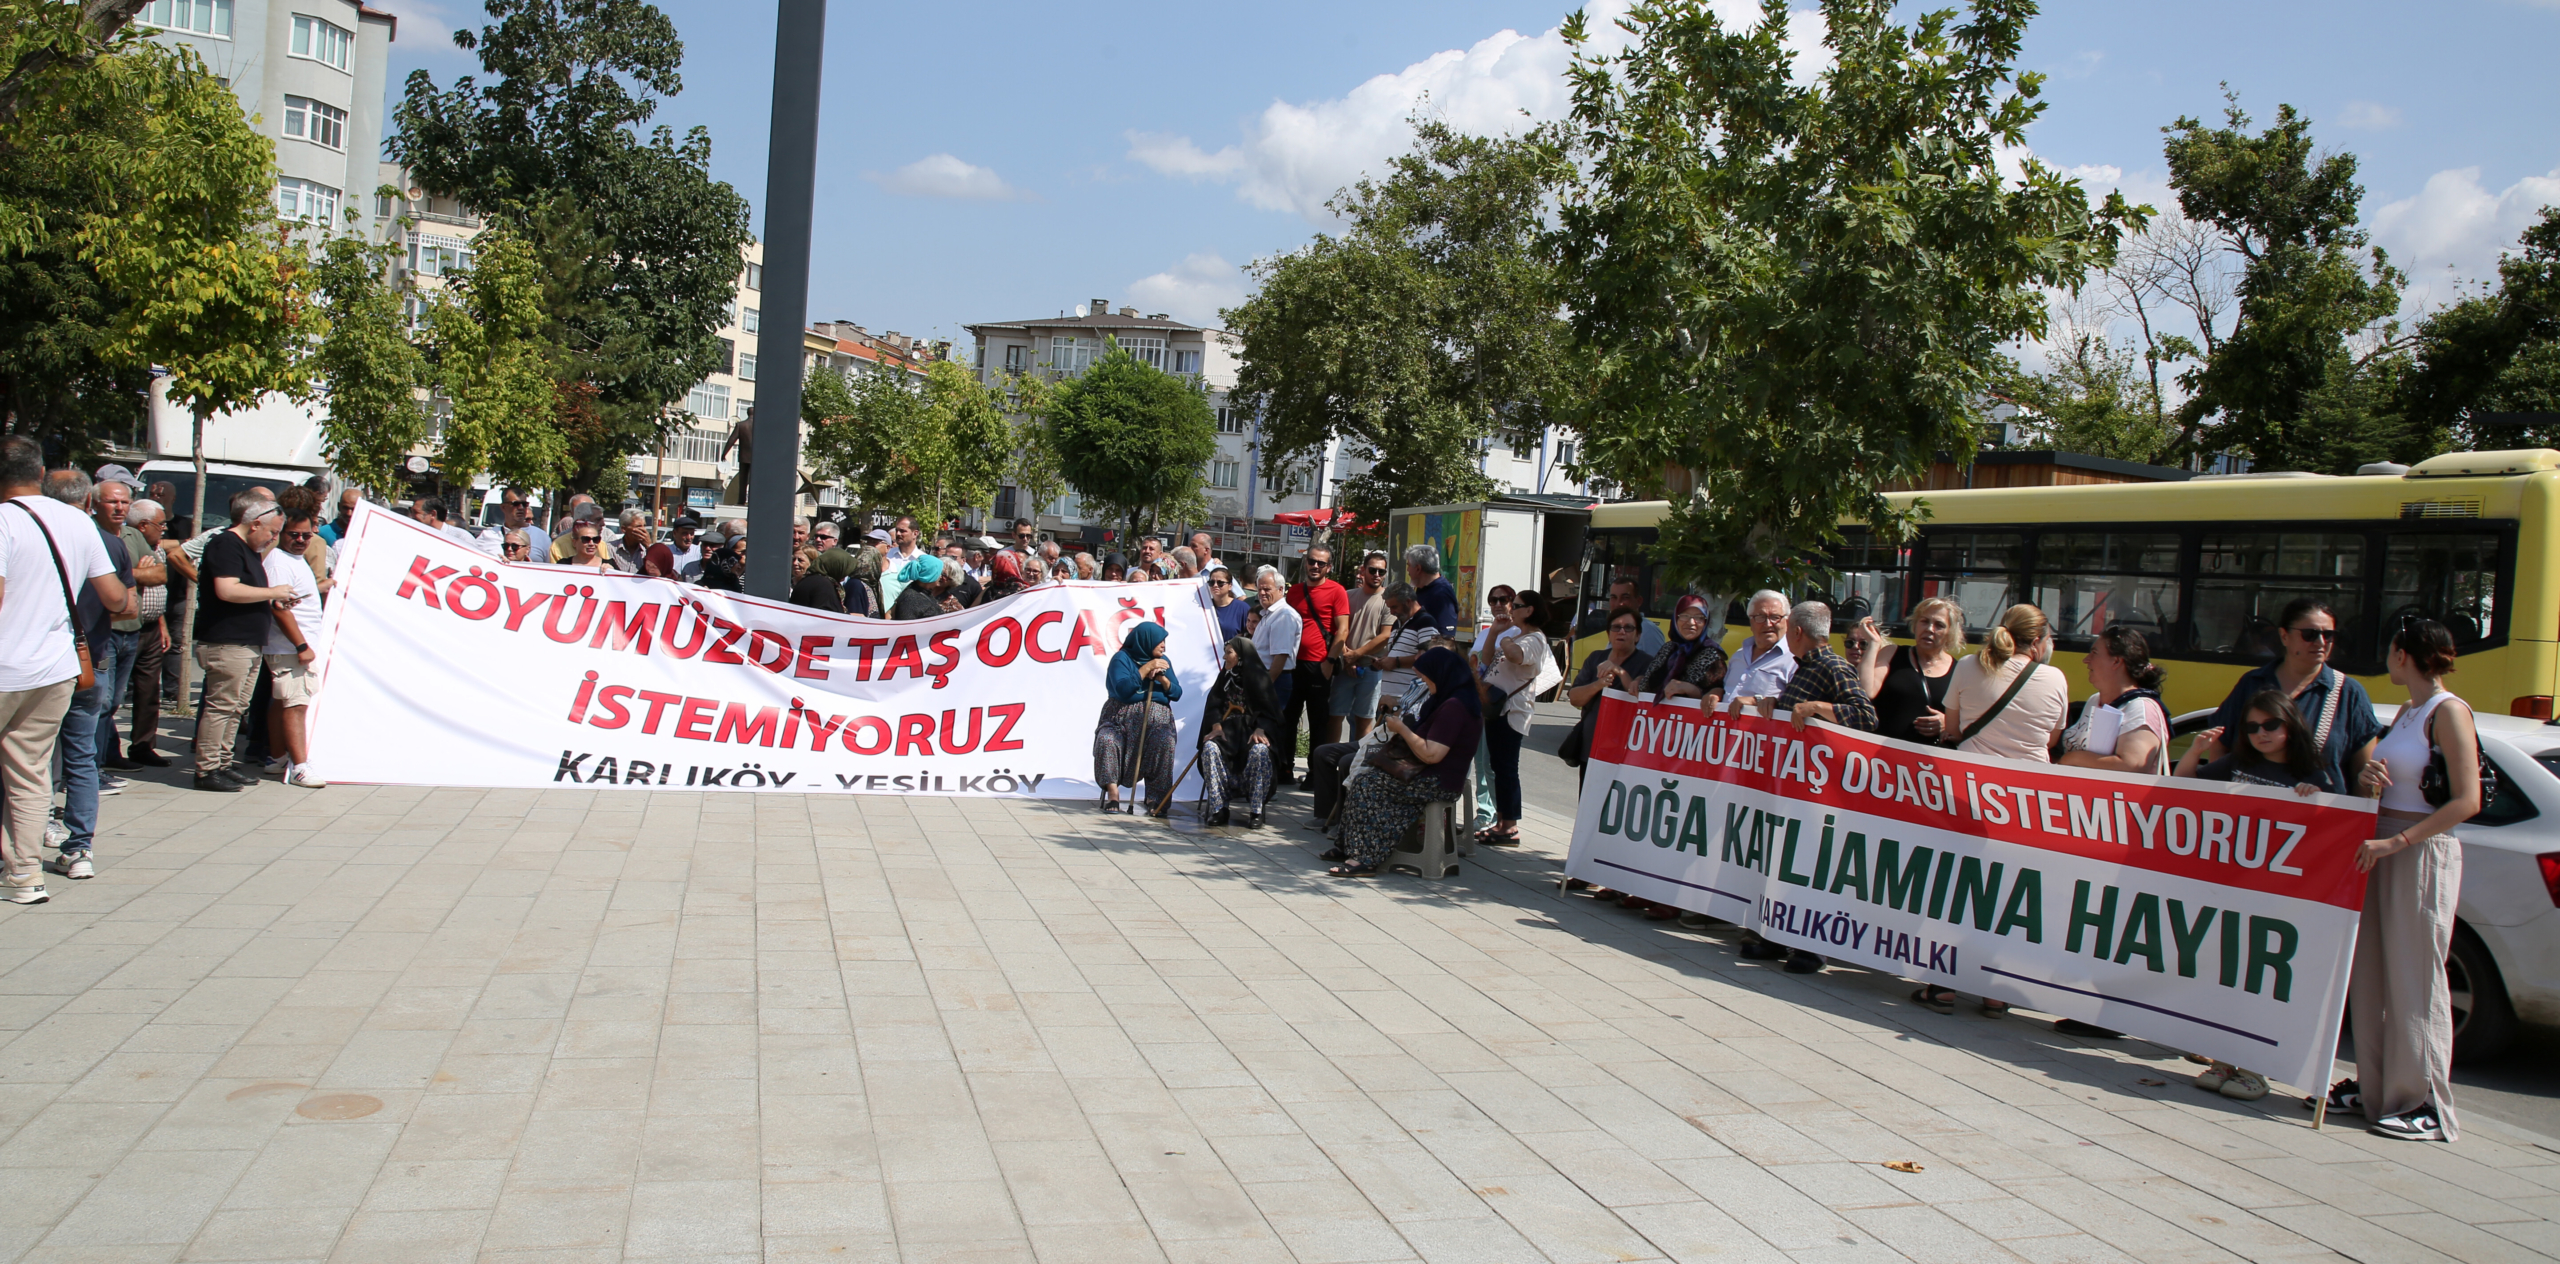 Edirne'de taş ocağı istemeyen köylüler imza topladı